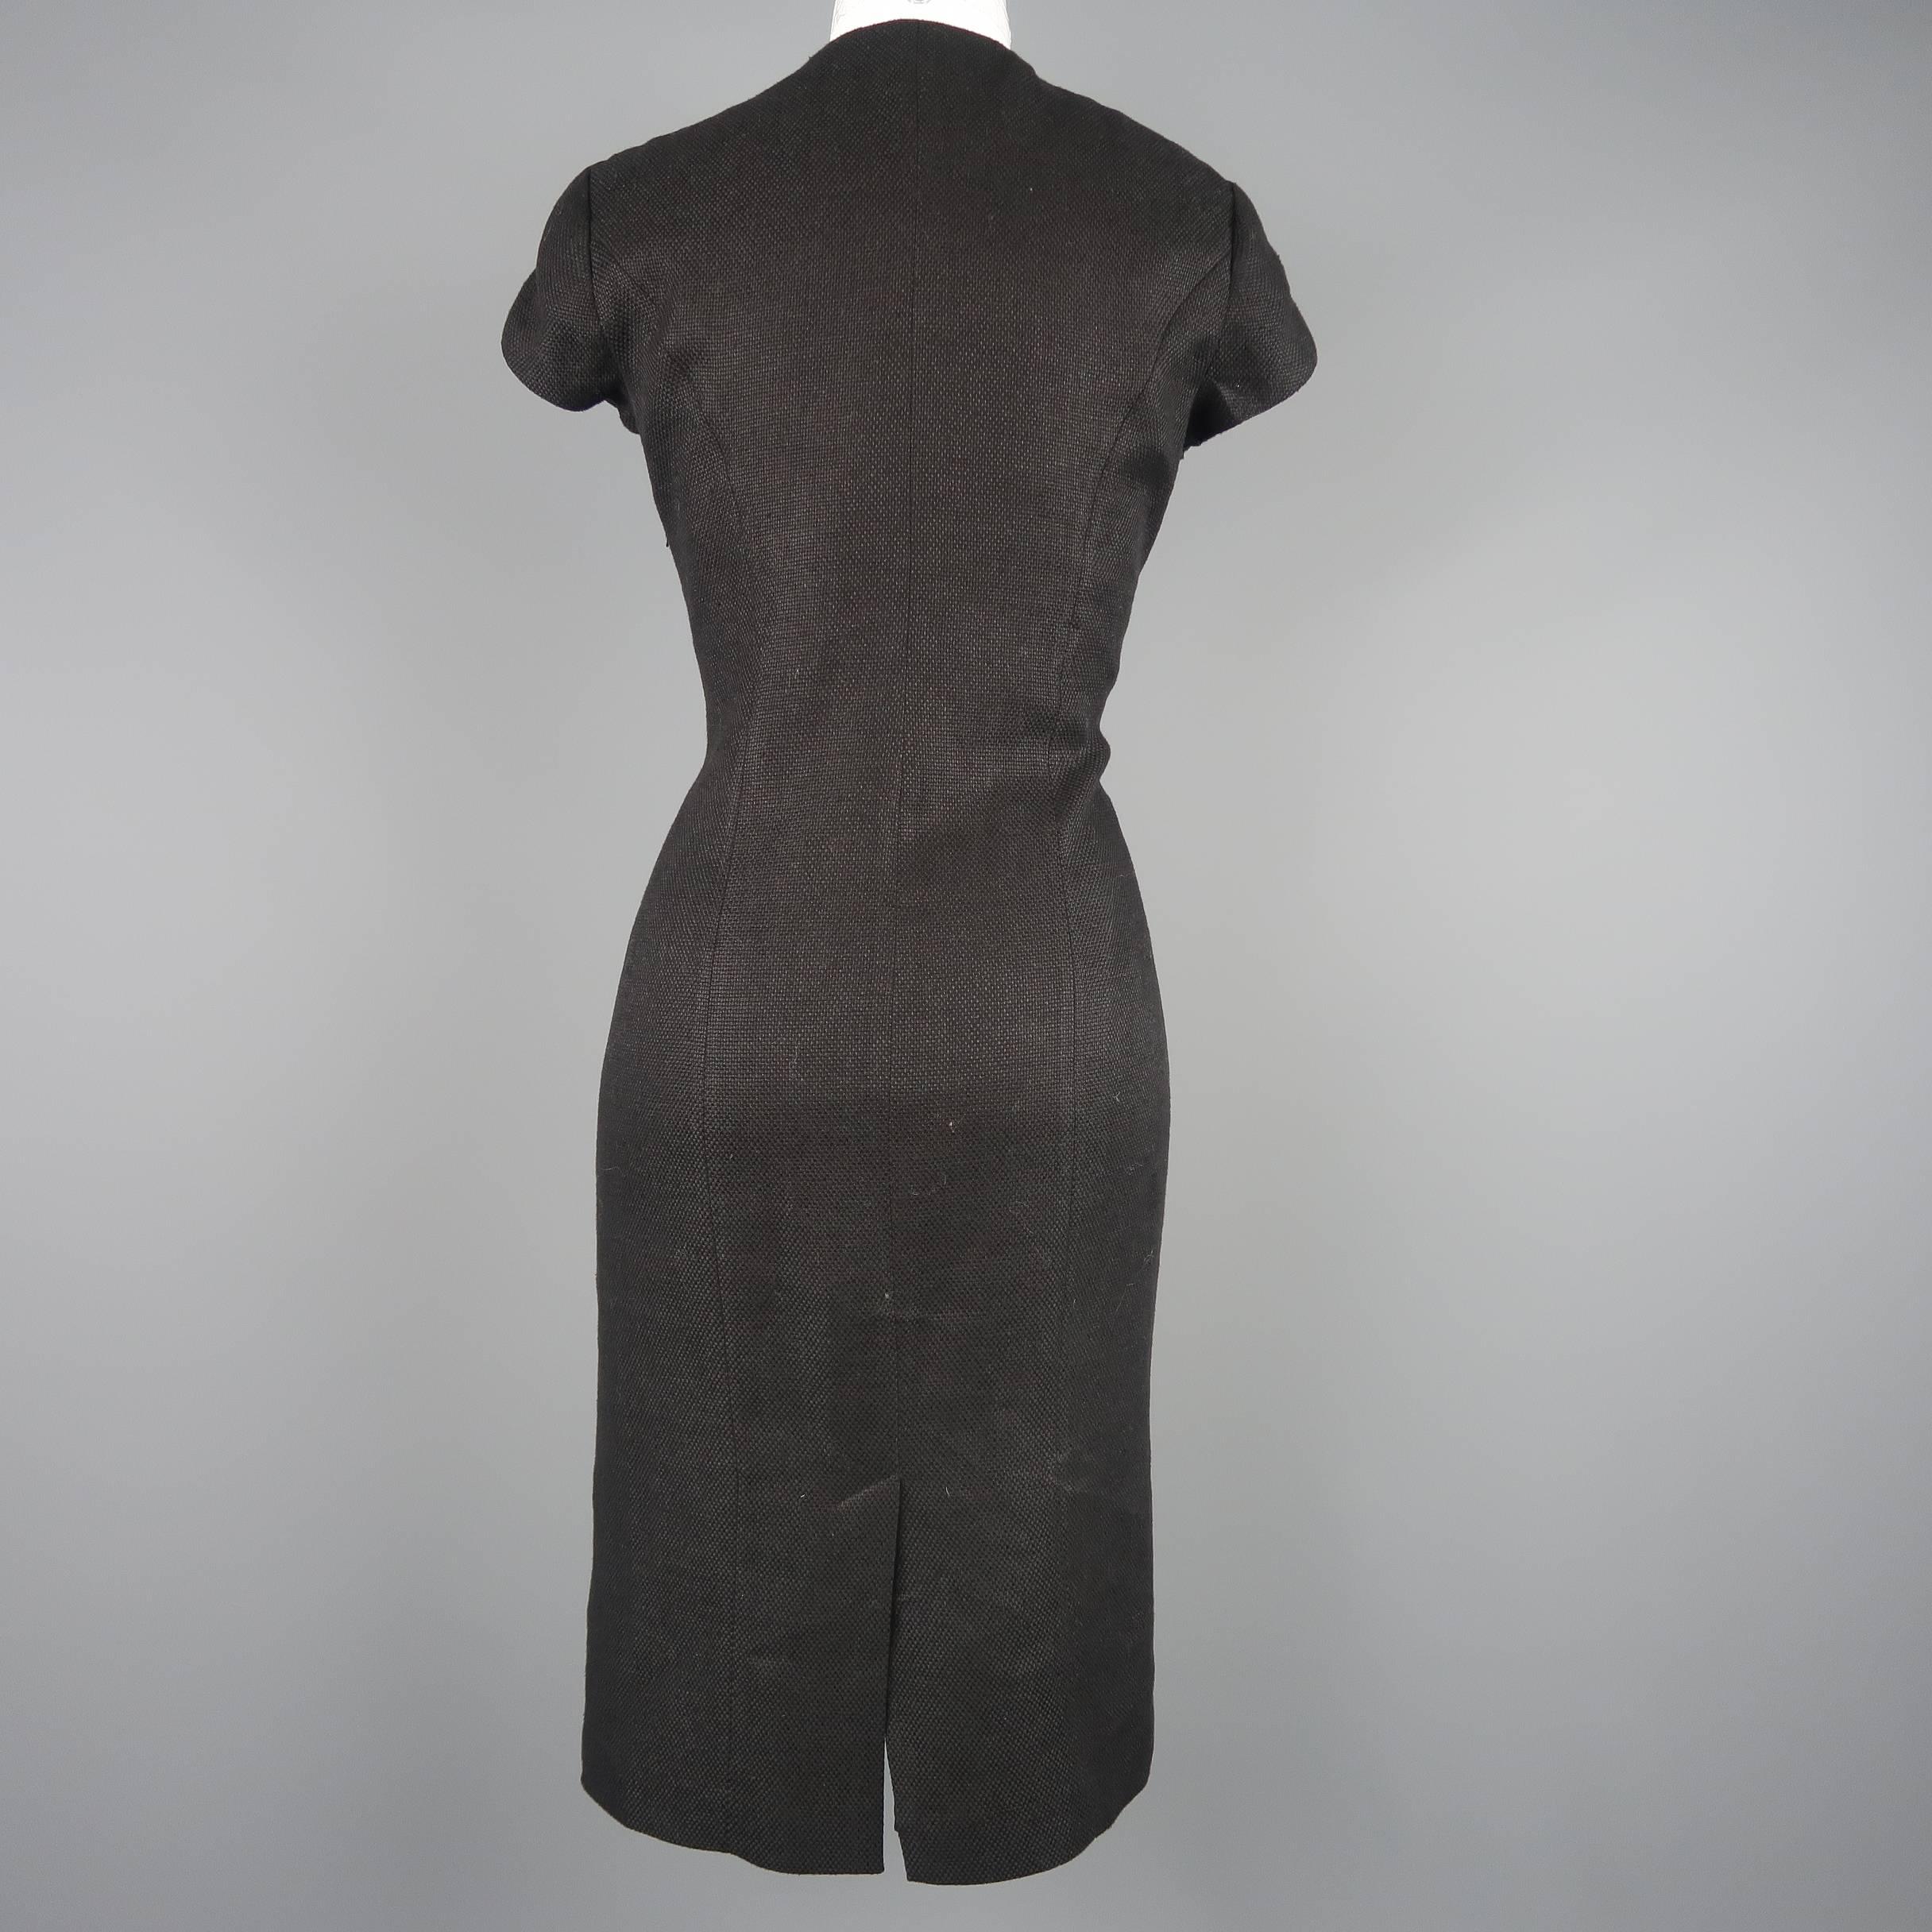 RALPH LAUREN Size 8 Black Woven Linen Scoop Neck Dress 1